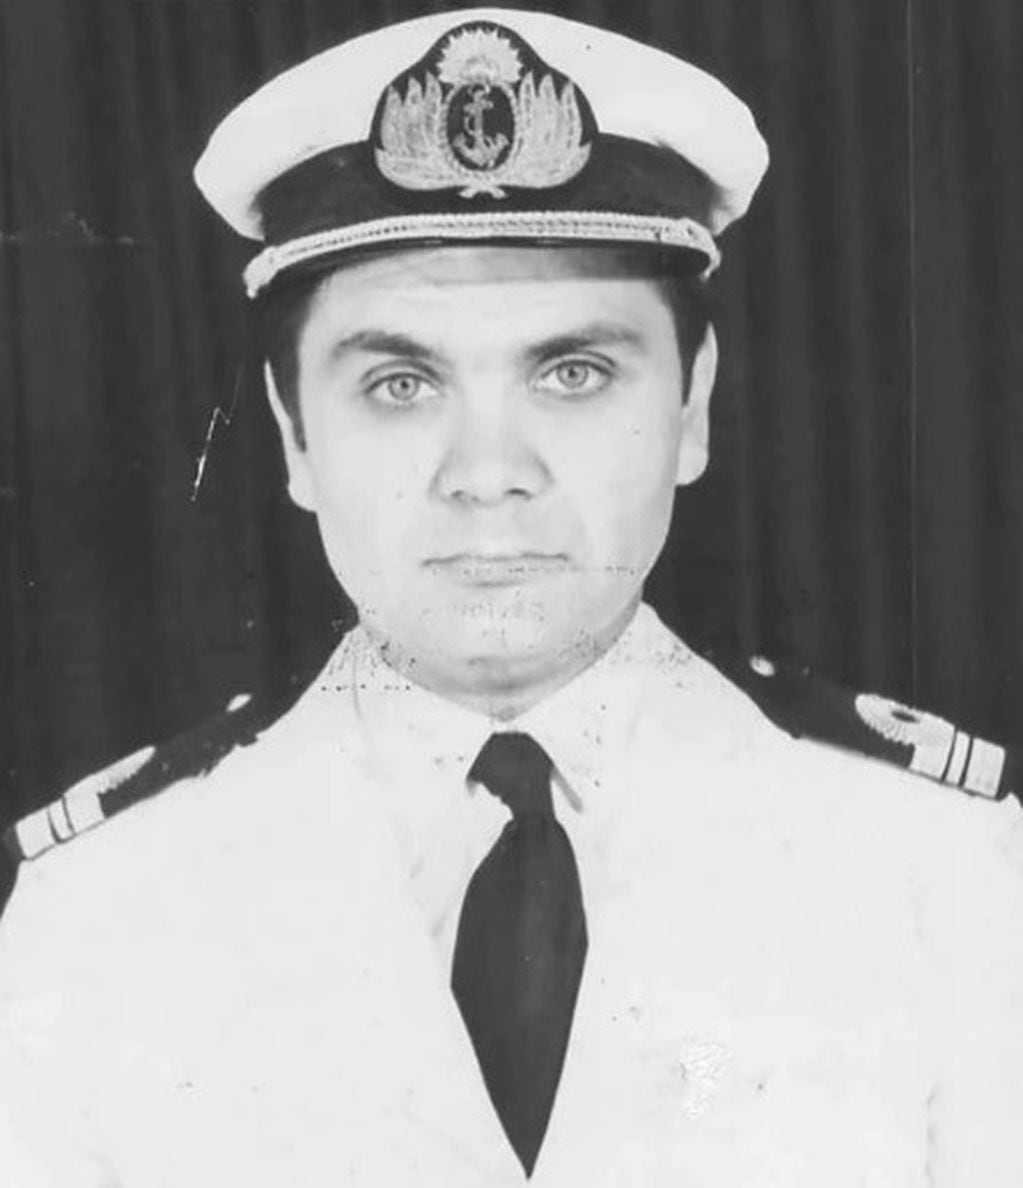 Capitán de Corbeta Sergio Raúl Gómez Roca, Comandante del ARA Sobral, muerto en combate.